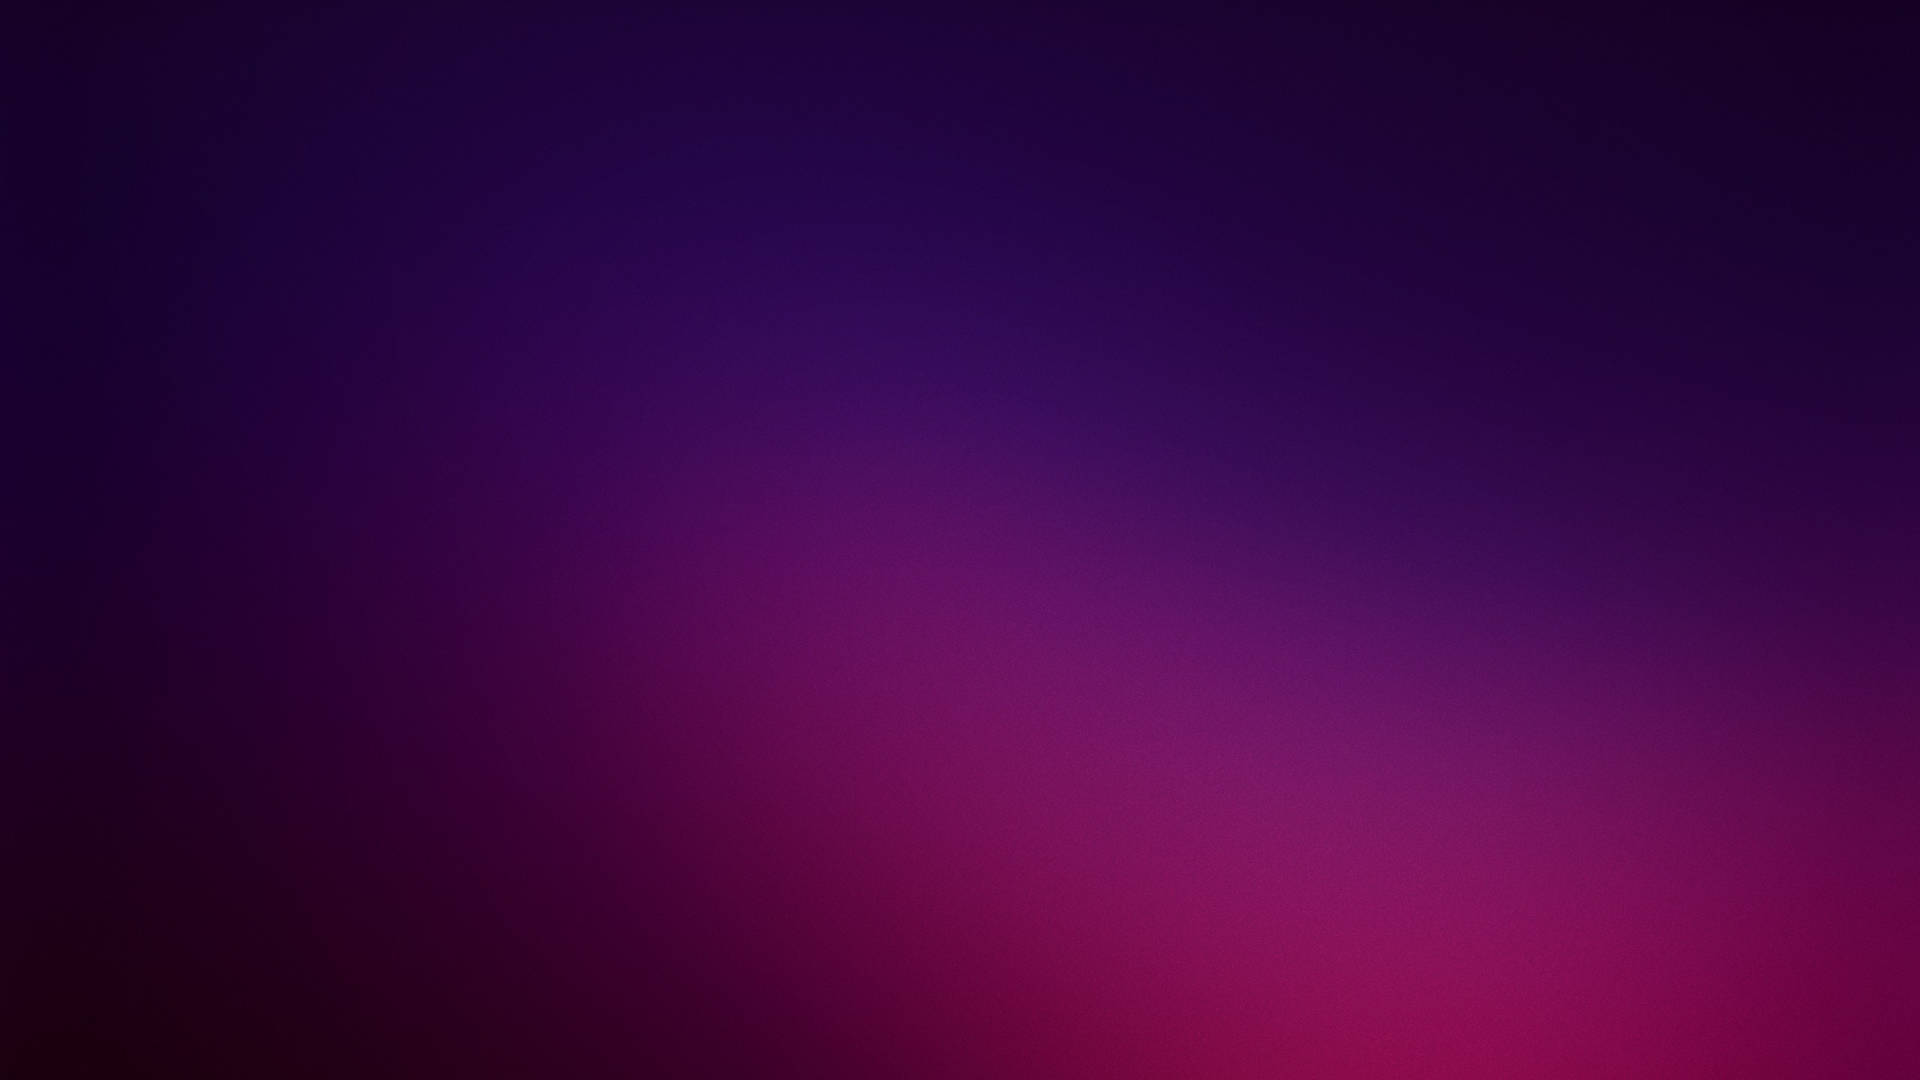 Simple Hd Purple Wallpaper